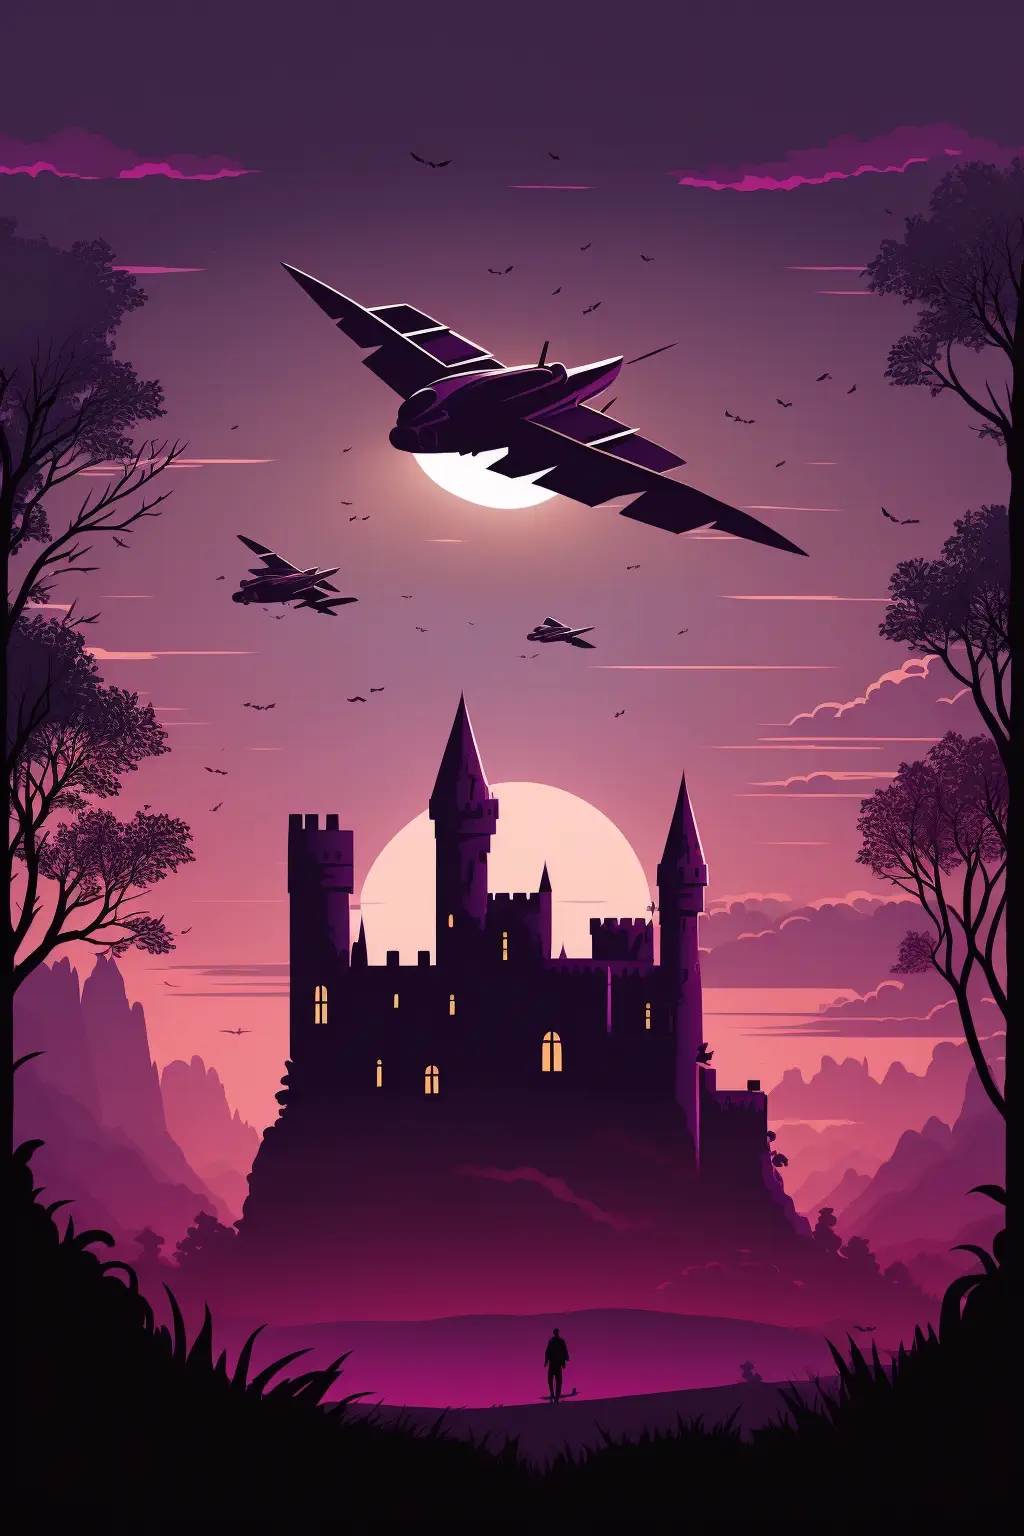 Drakosha_medieval_castle_in_the_background_purple_and_dark_fant_6677d4ce-fc02-4966-ac8f-6c4b33145e37